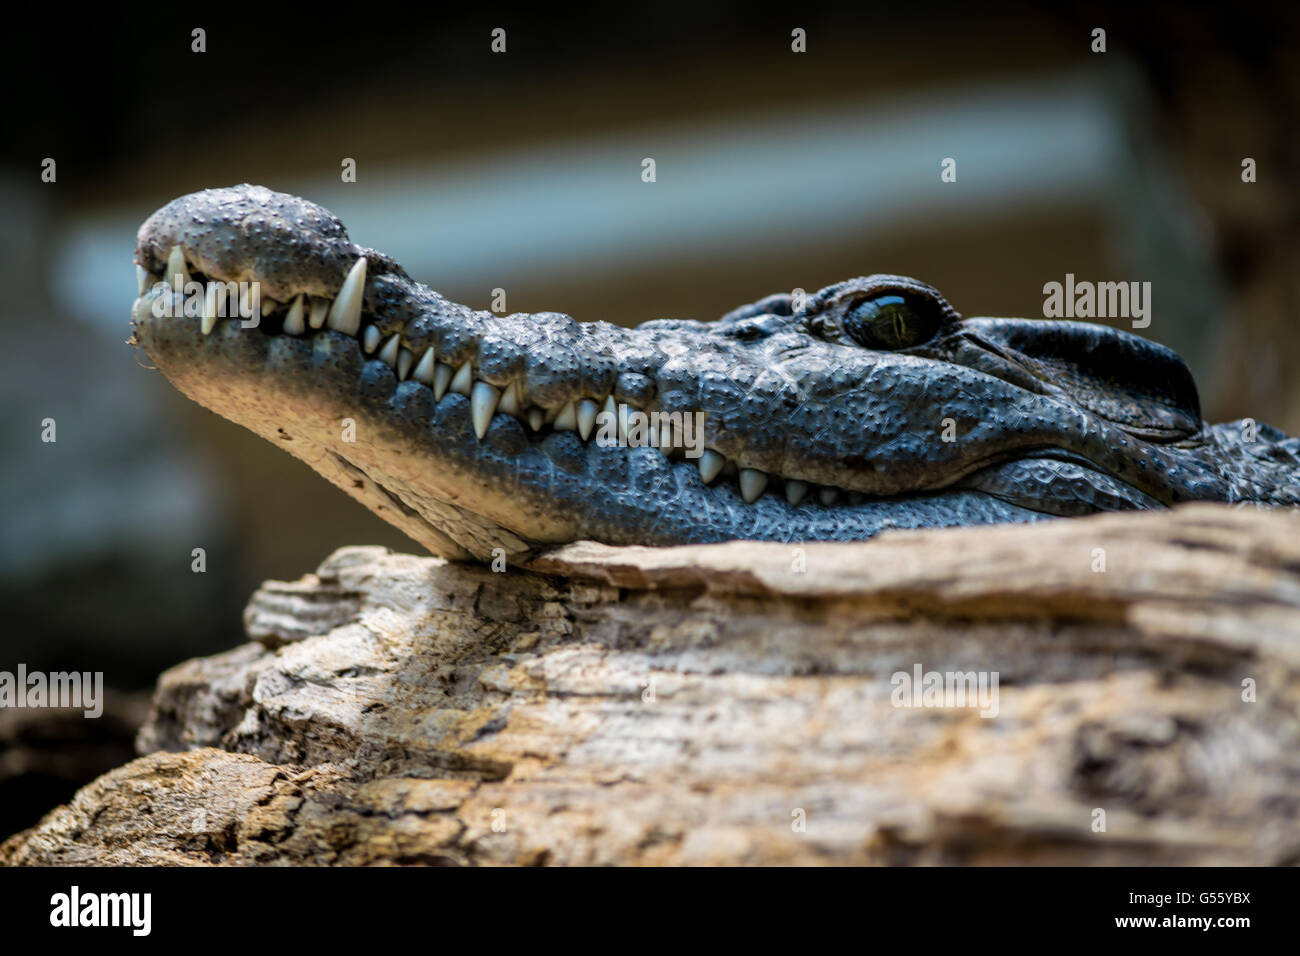 Crocodile at London Zoo Stock Photo